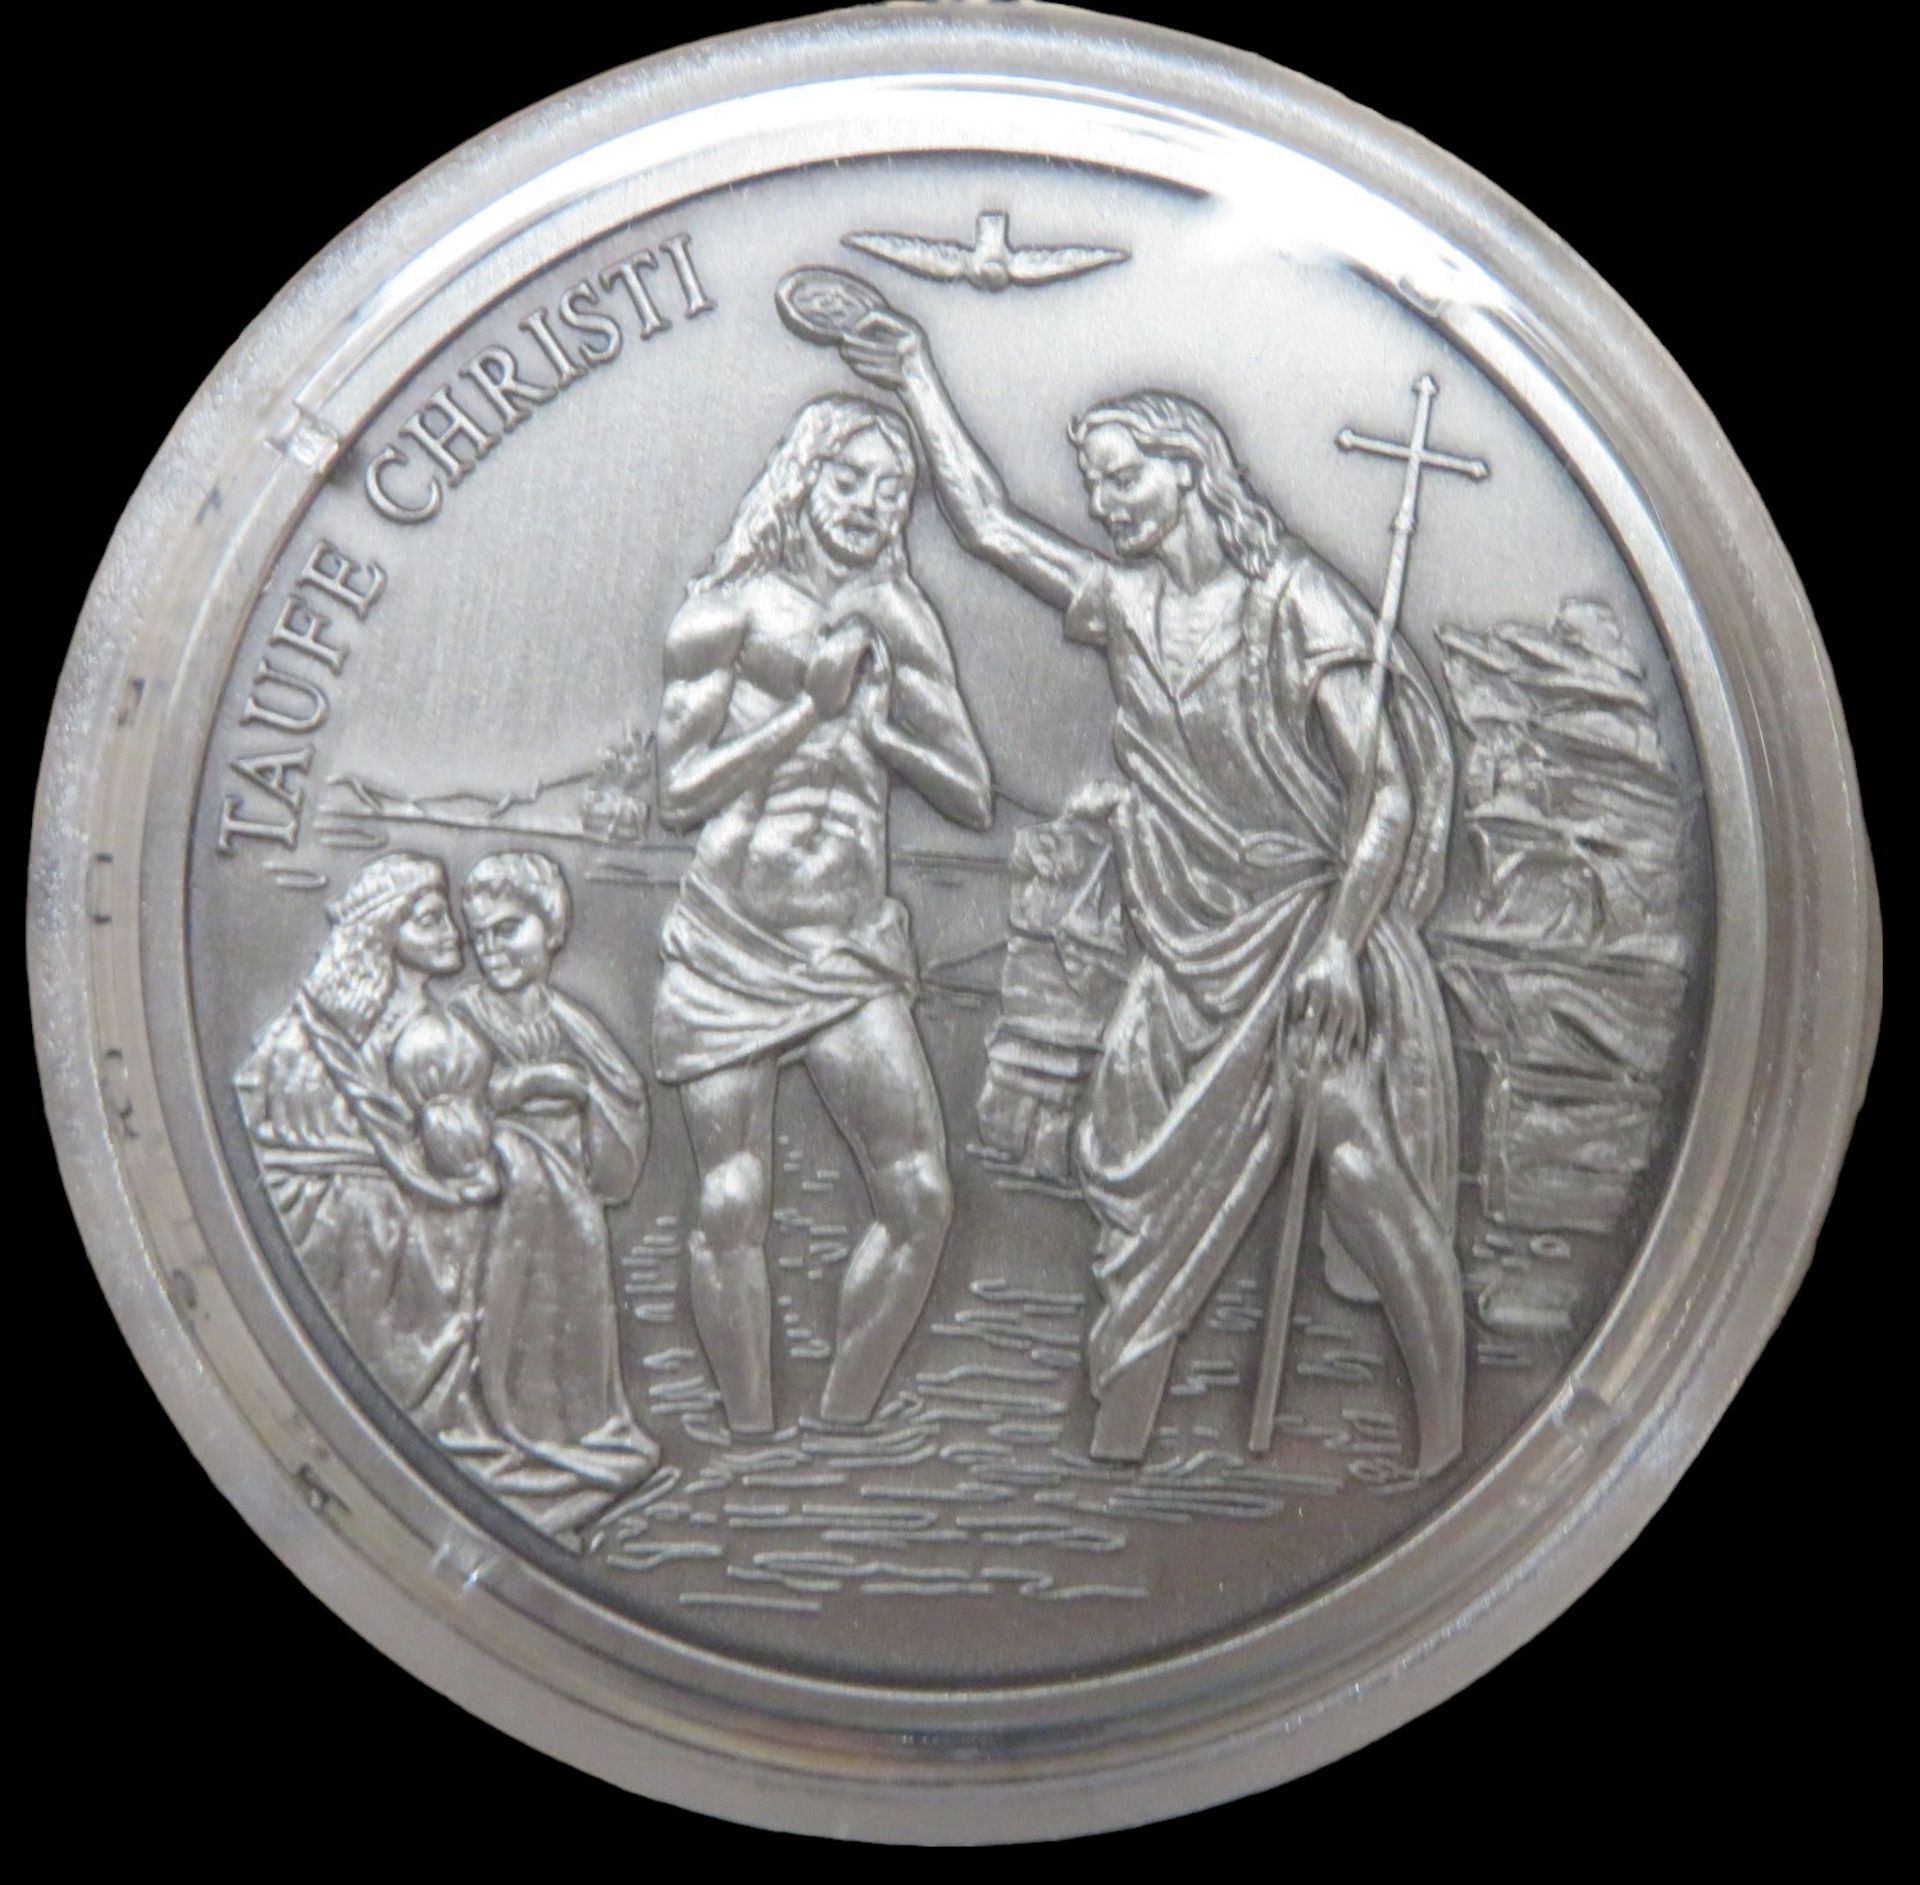 12 Silbermünzen, Geschichte des Christentums, 11 x je 20 g Feinsilber 999/000, diese zus. 220 g, 1 - Image 4 of 4